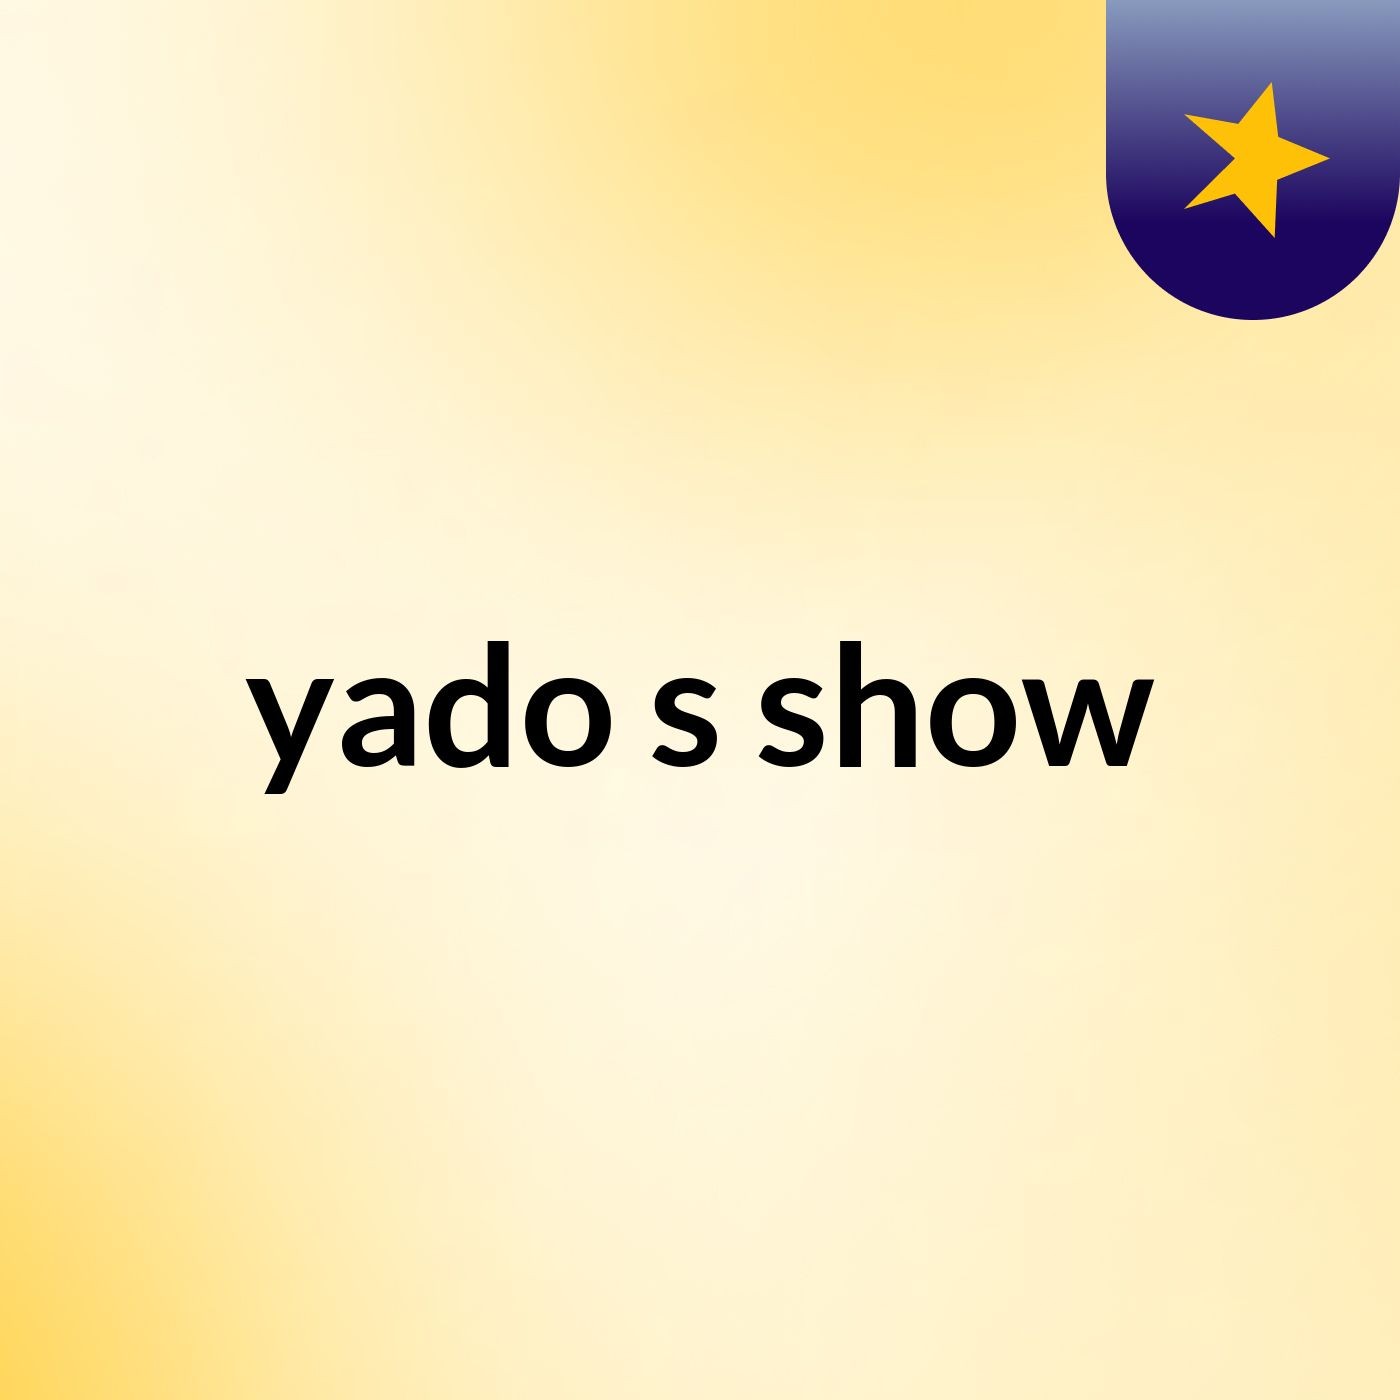 yado's show